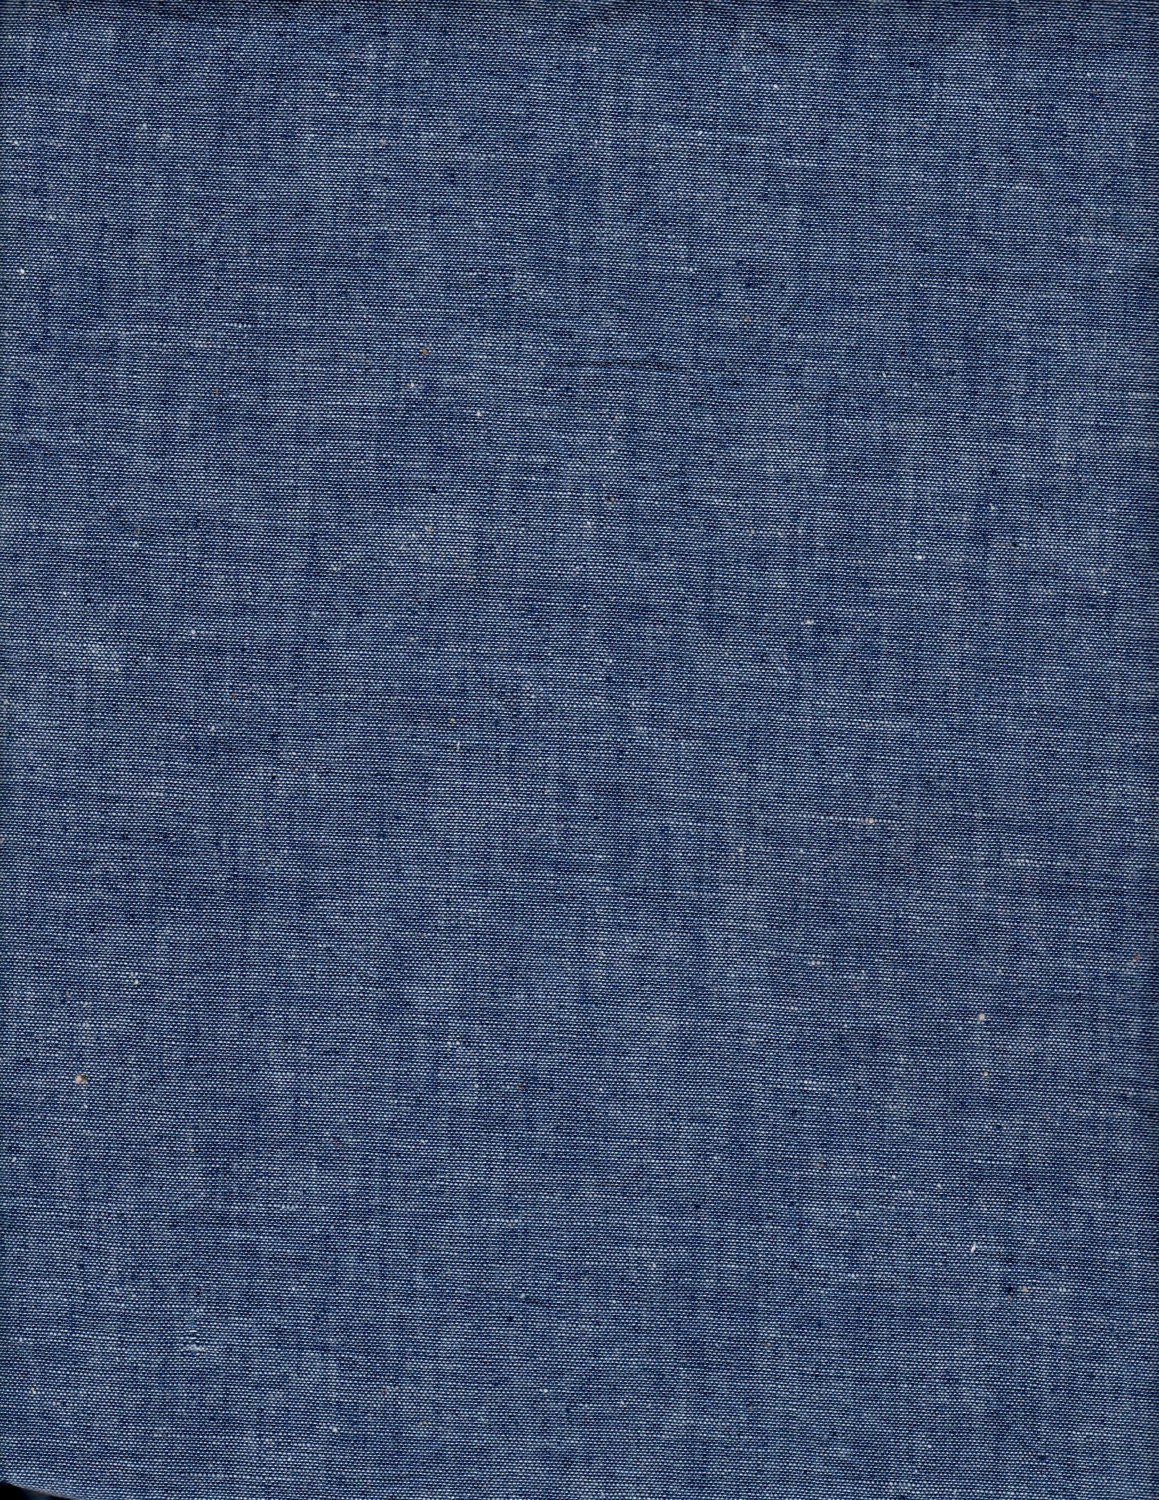 Blue Chambray Fabric